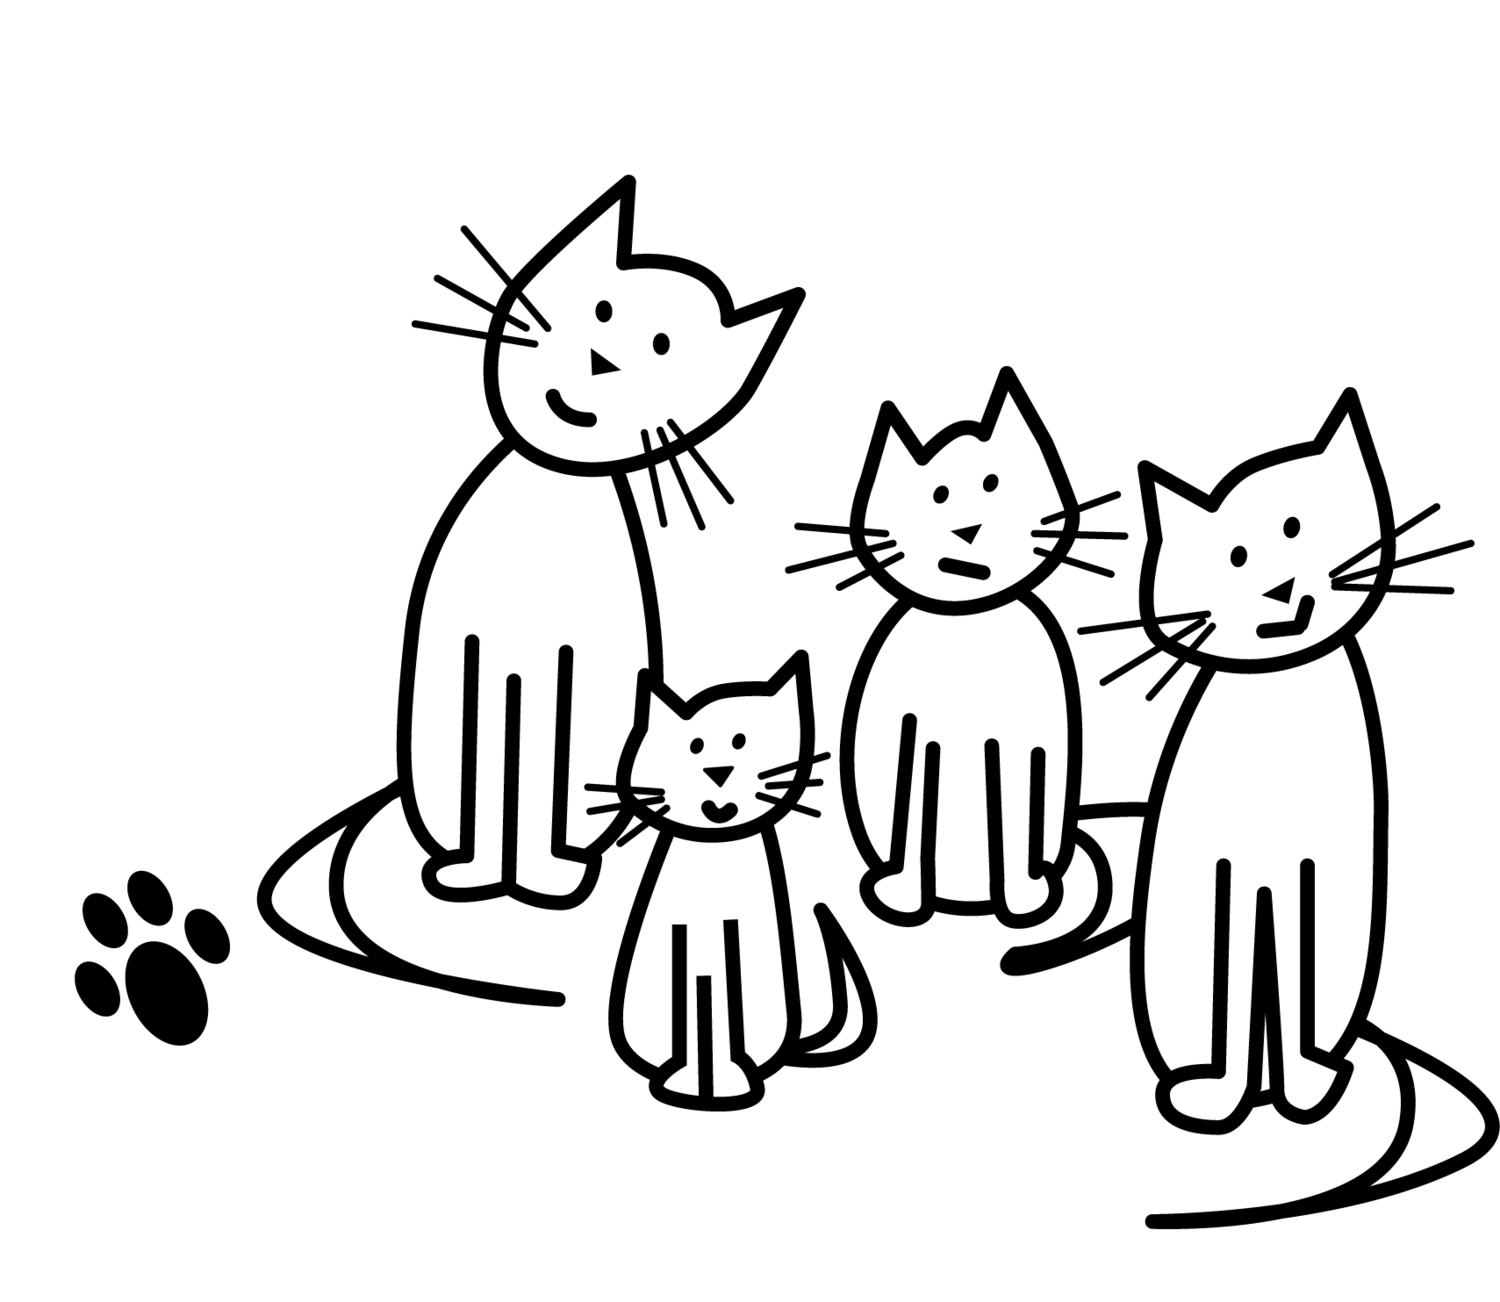 Washington Heights Cat Colony